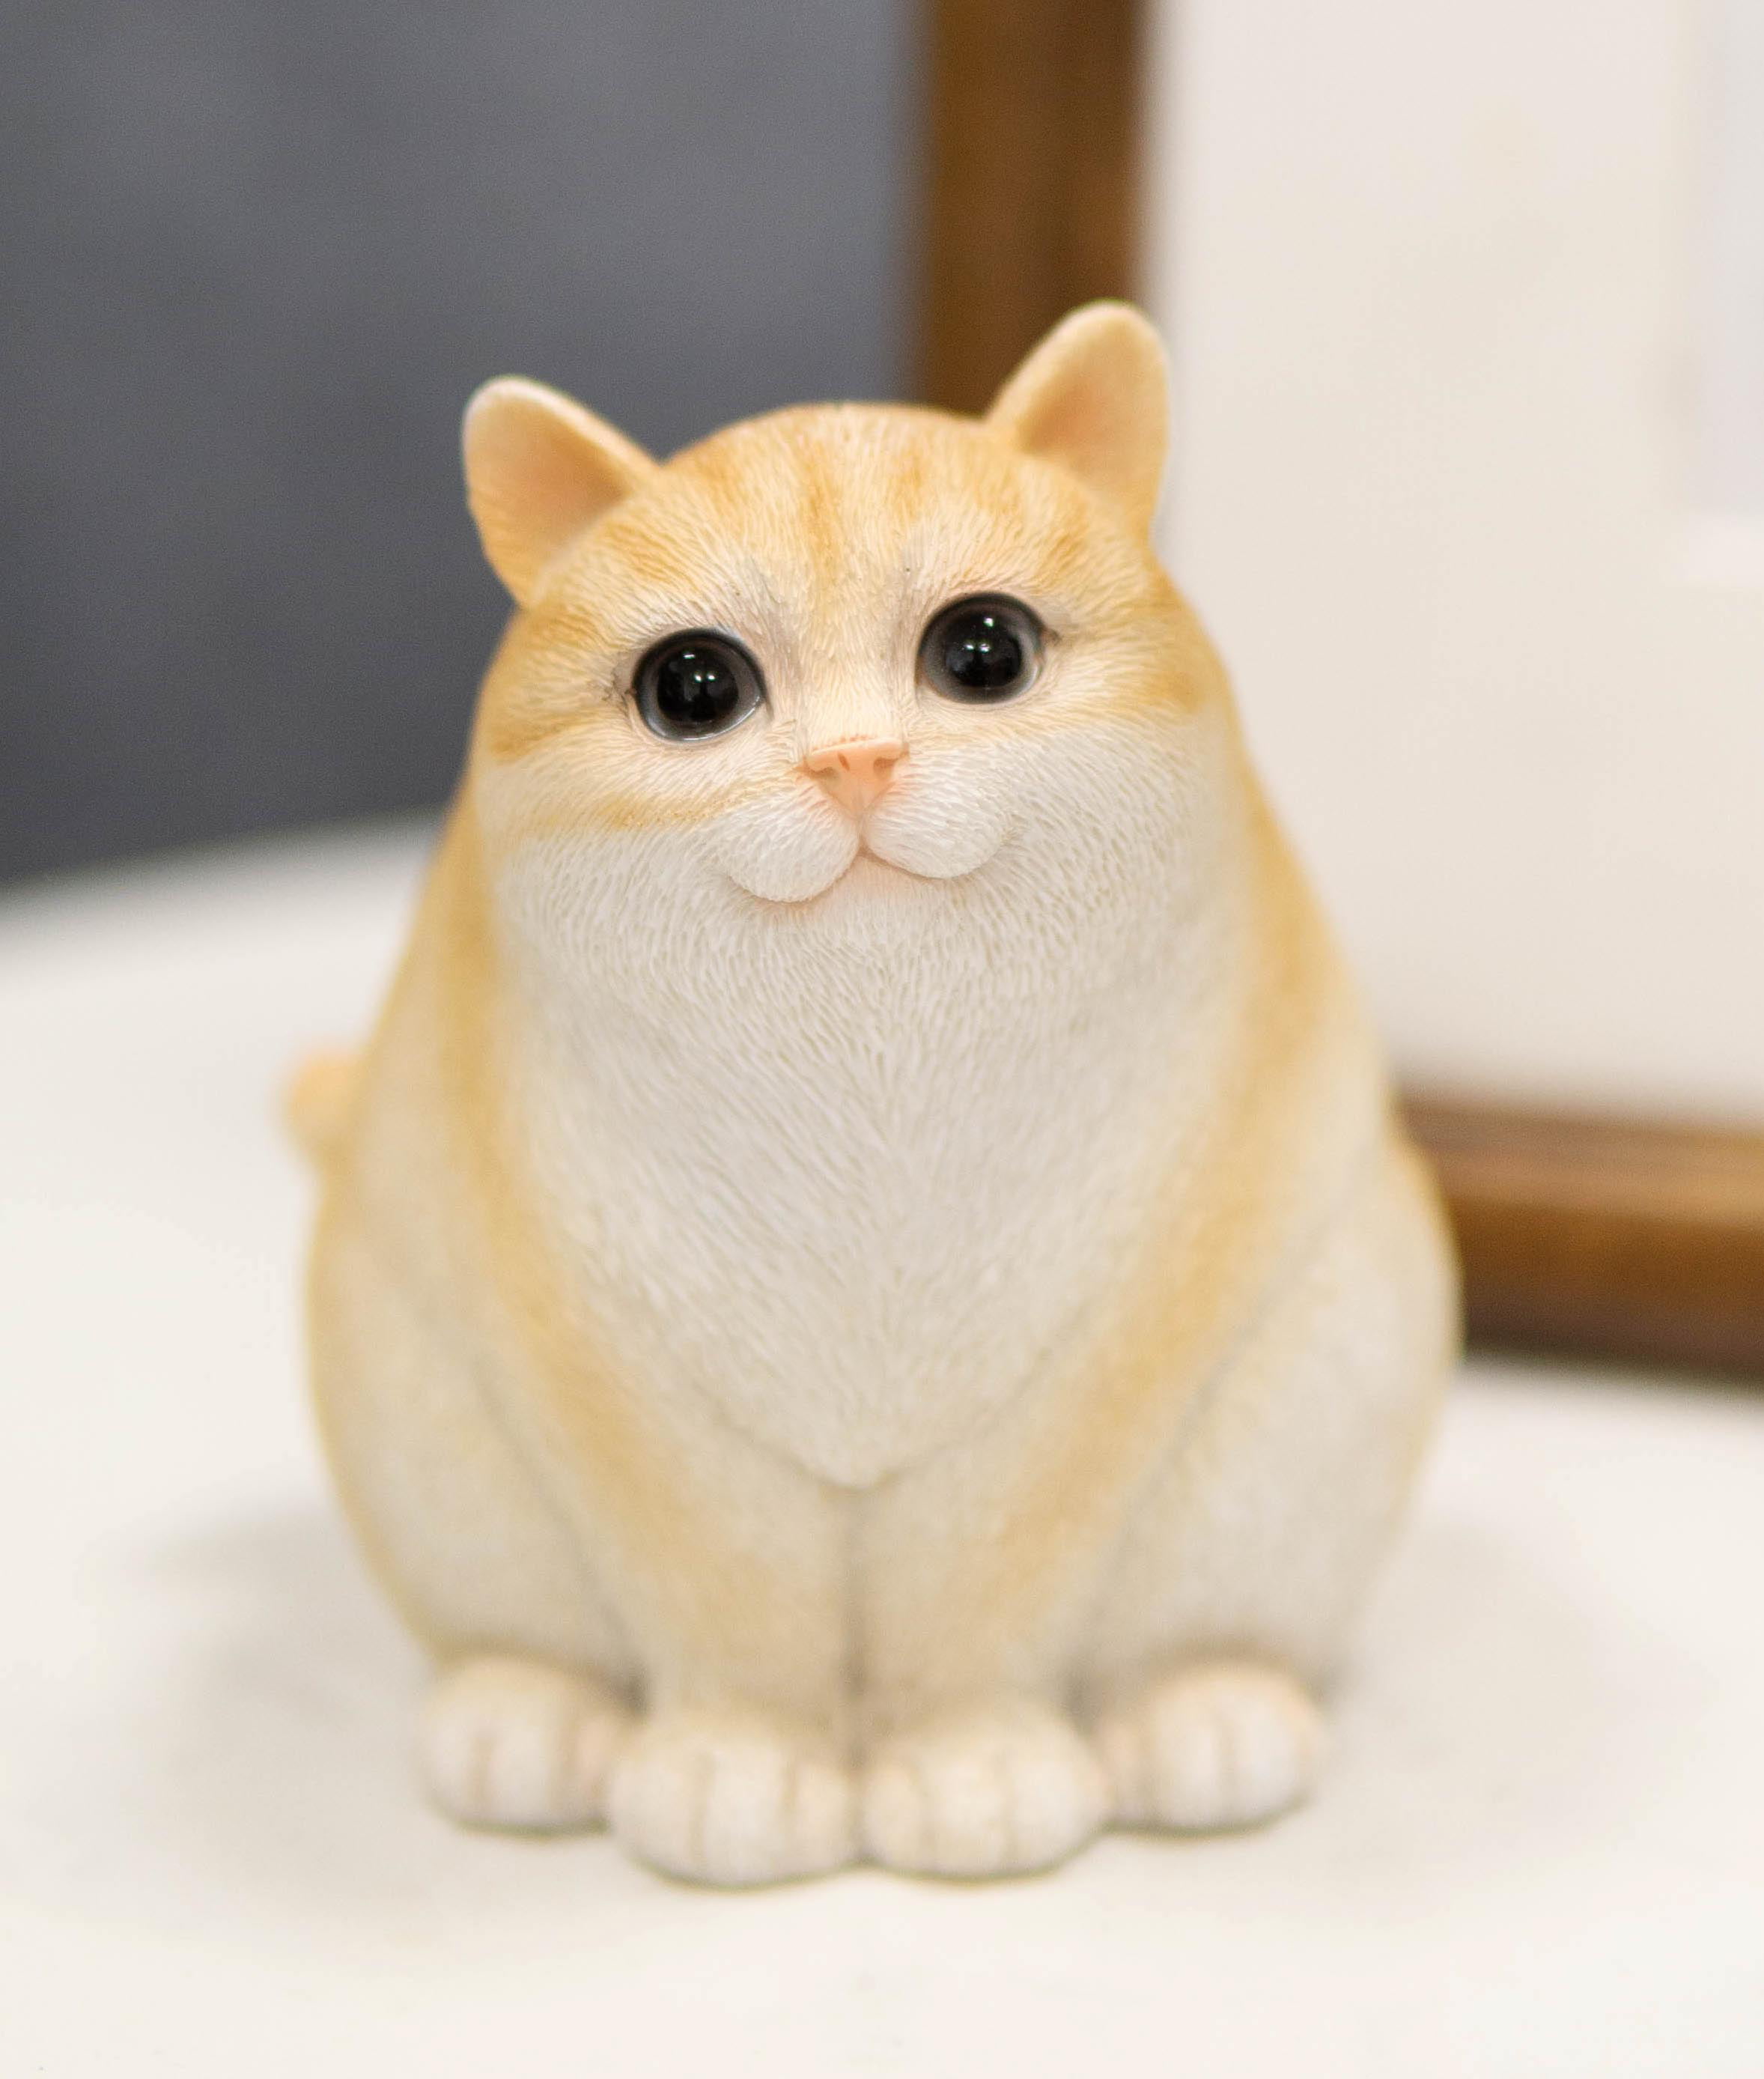 Adorable Feline Tabby Striped Fat Cat Kitten Figurine 4"H Miniature